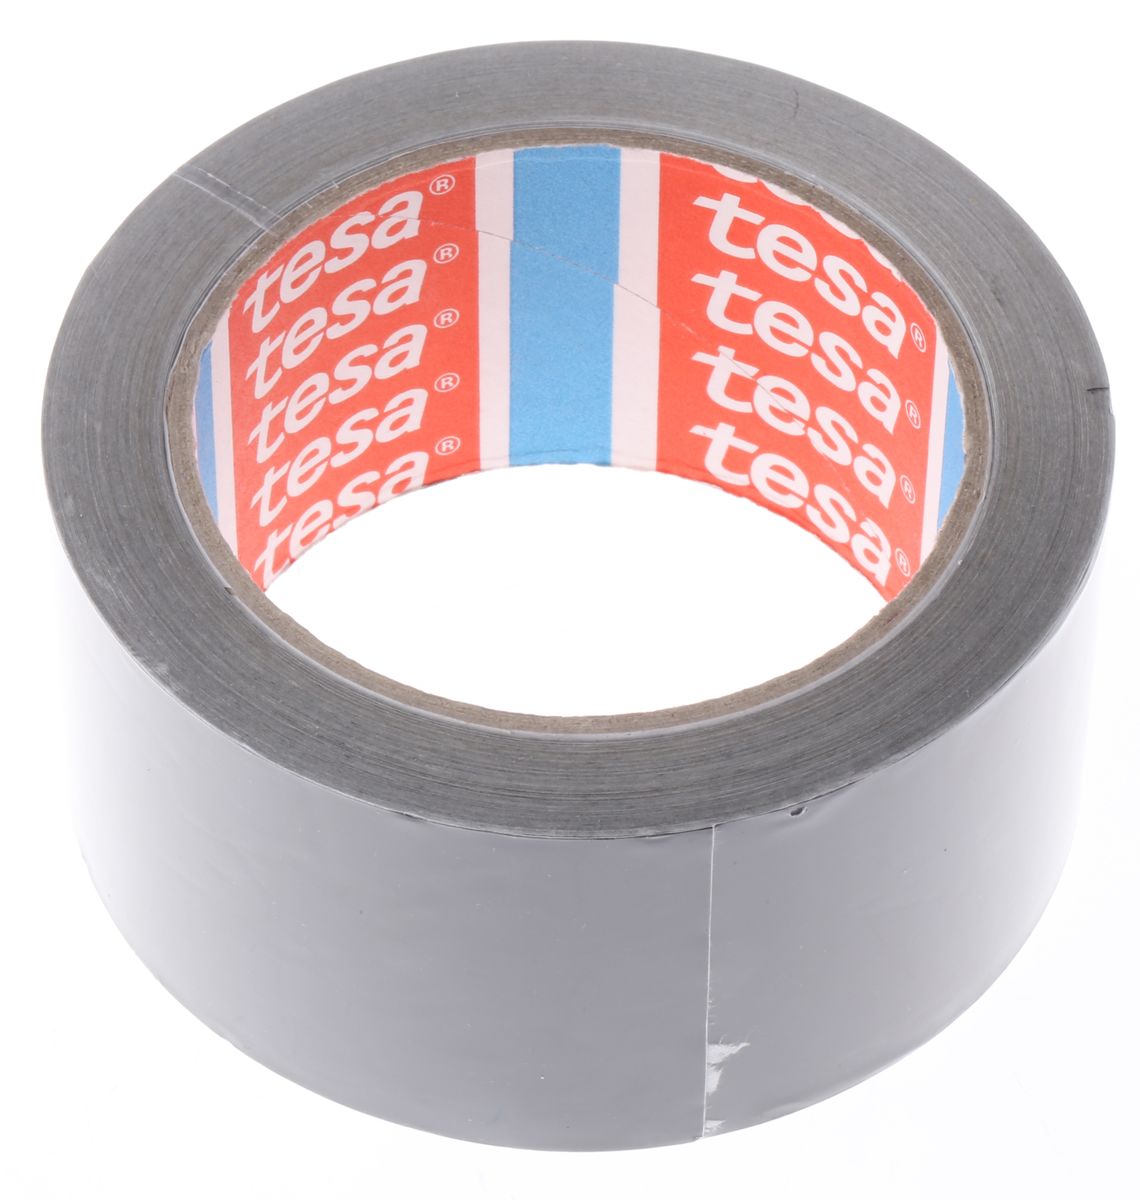 Tesa 50577 Conductive Aluminium Tape, 50mm x 25m